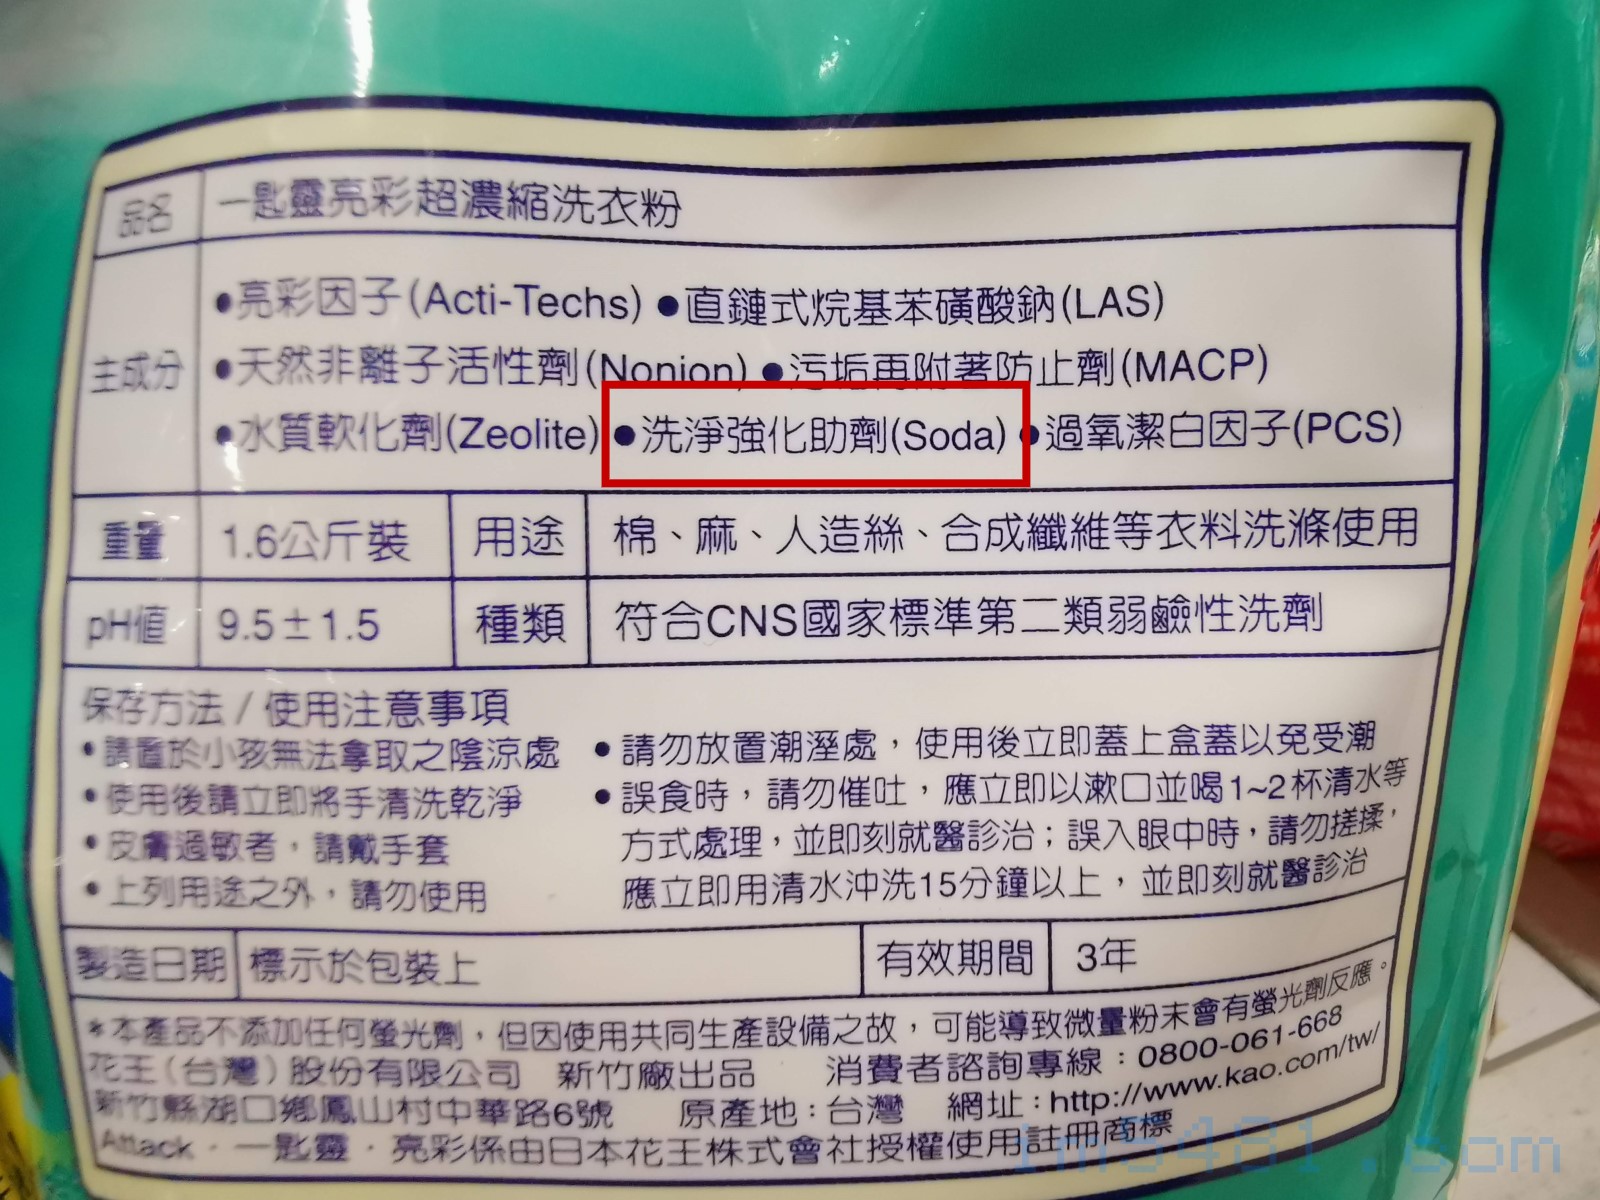 花王一匙靈亮彩超濃縮洗衣粉，添加的『洗淨強化助劑(SODA)』。SODA指的是蘇打或碳酸鈉，完全不是小蘇打。